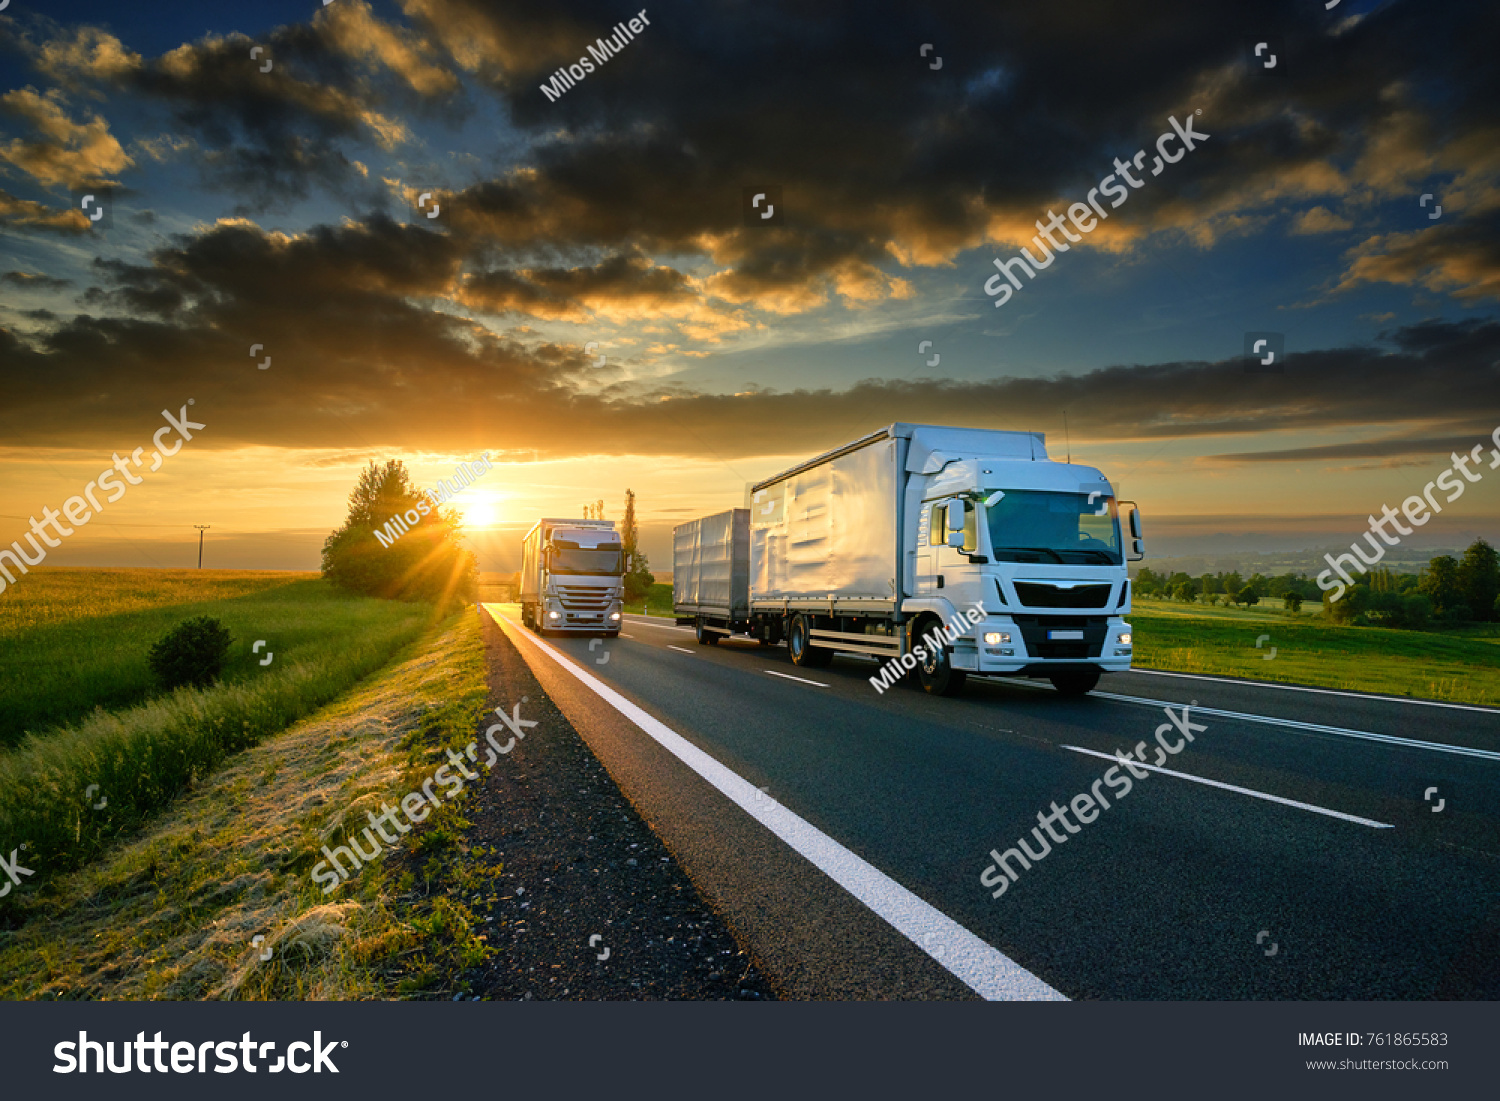 Overtaking trucks on an asphalt road in a rural landscape at sunset #761865583